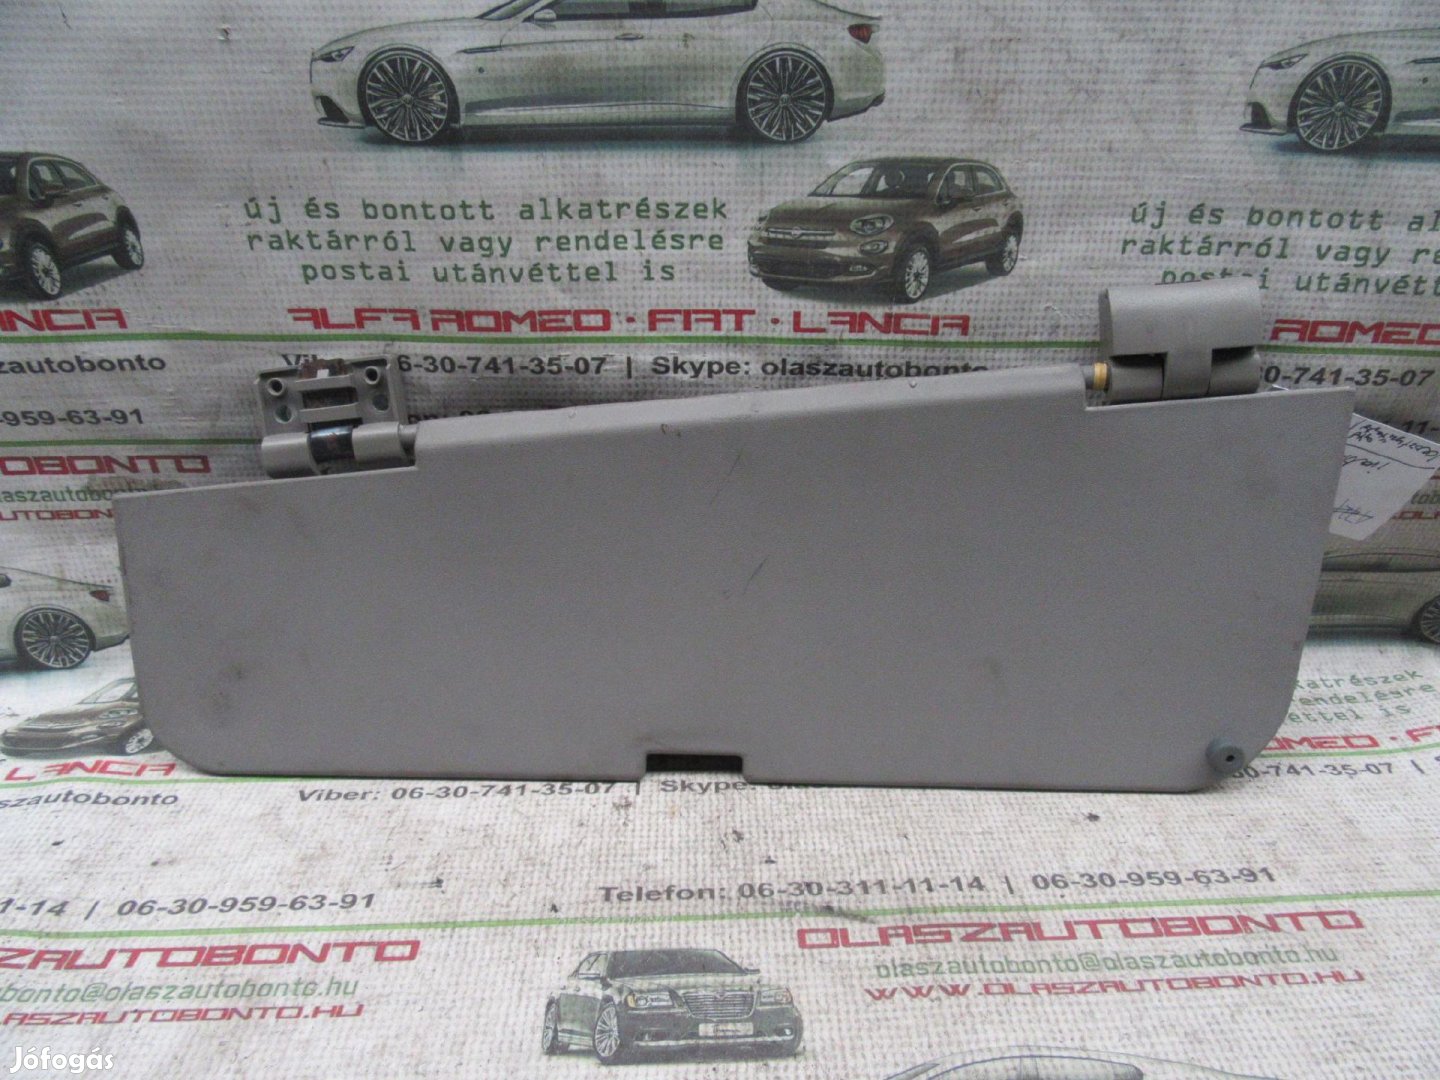 Fiat Multipla szürke színű, jobb oldali irattartó a tetőkárpitban